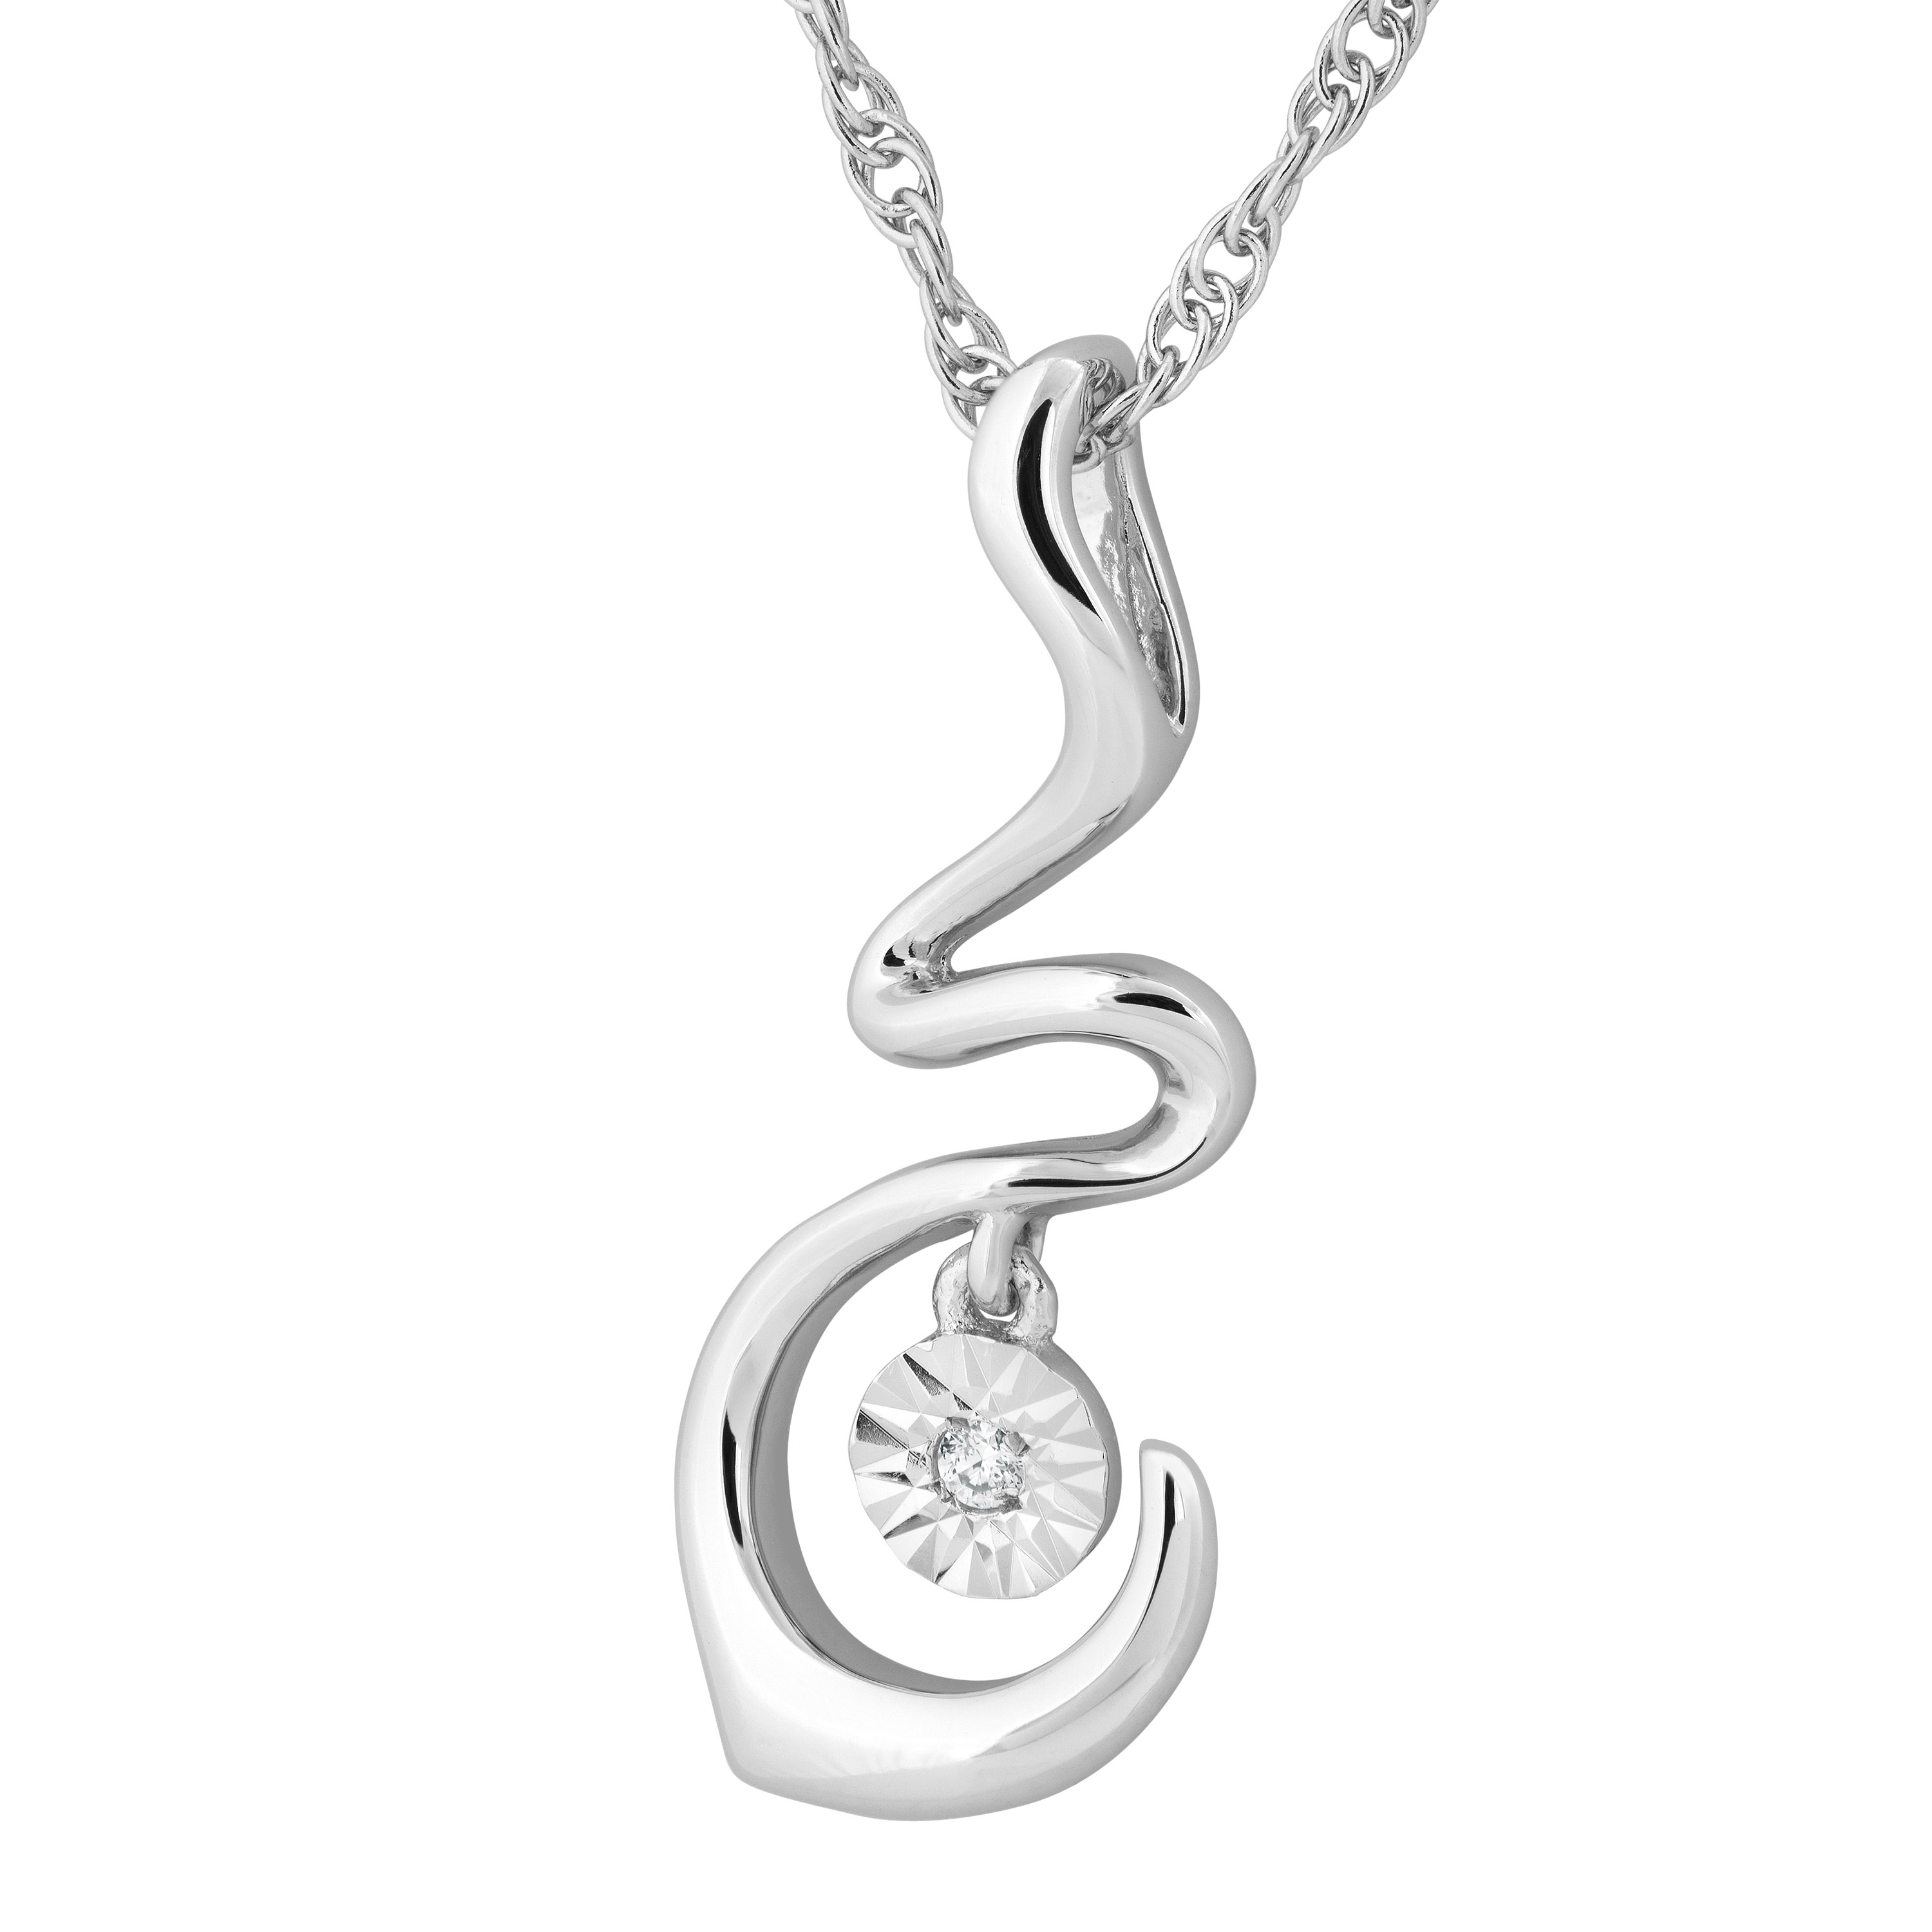 Diamond Snake Pendant Necklace, Sterling Silver. 